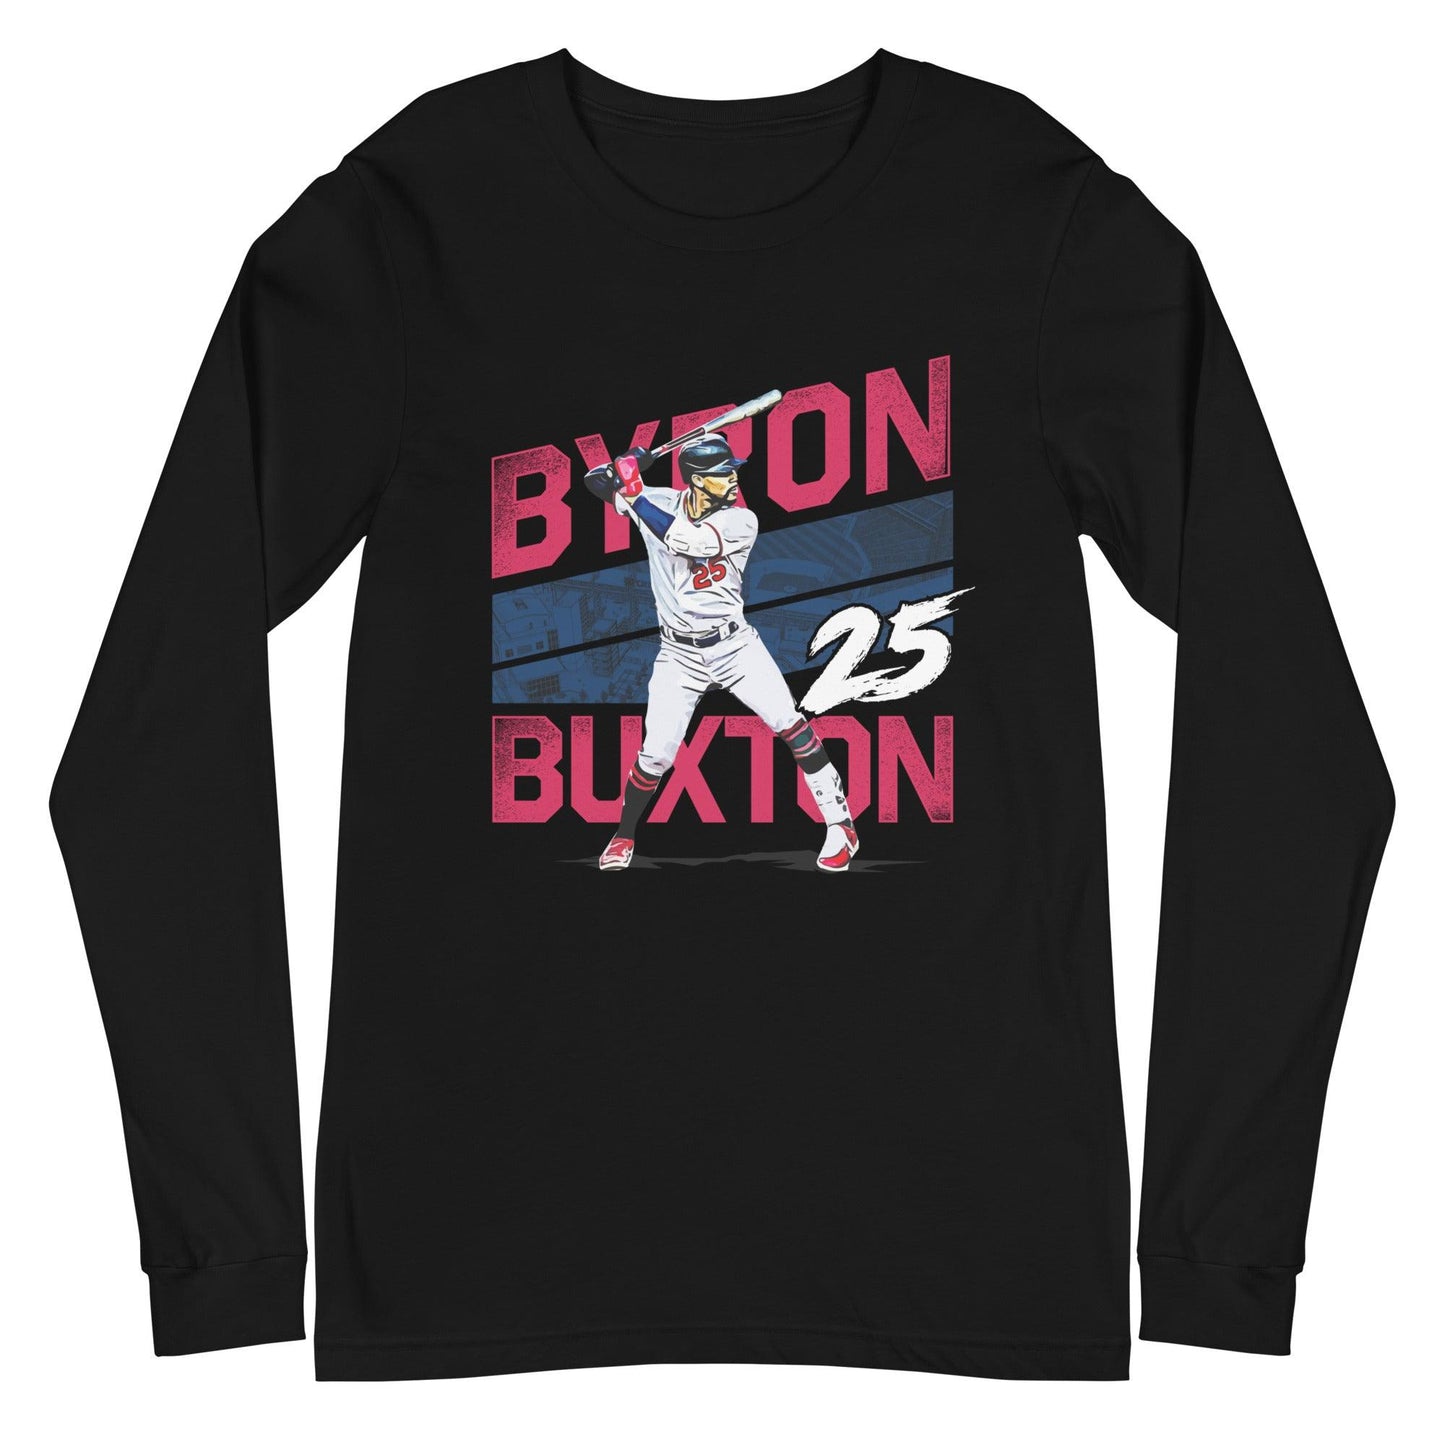 Byron Buxton "25" Long Sleeve Tee - Fan Arch